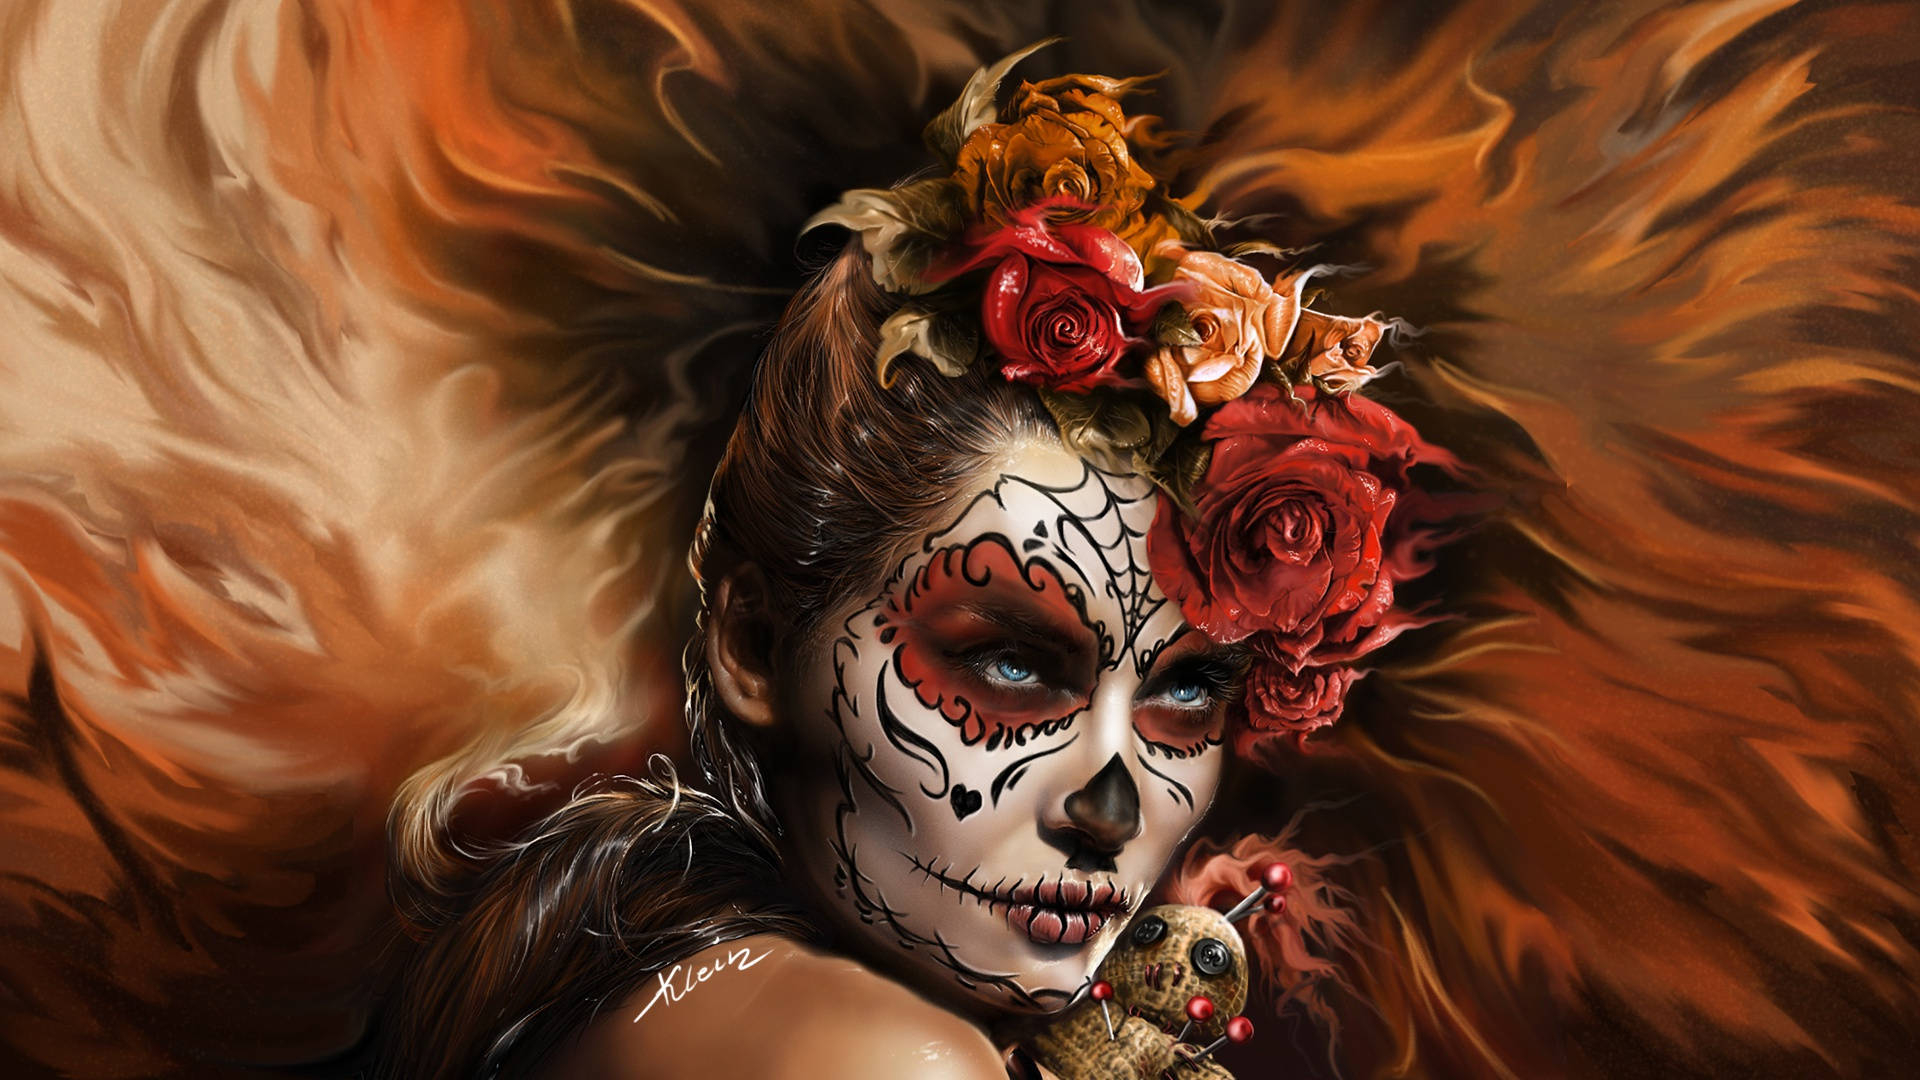 1920x1080 Download Fiery-looking Sugar Skull Woman Wallpaper